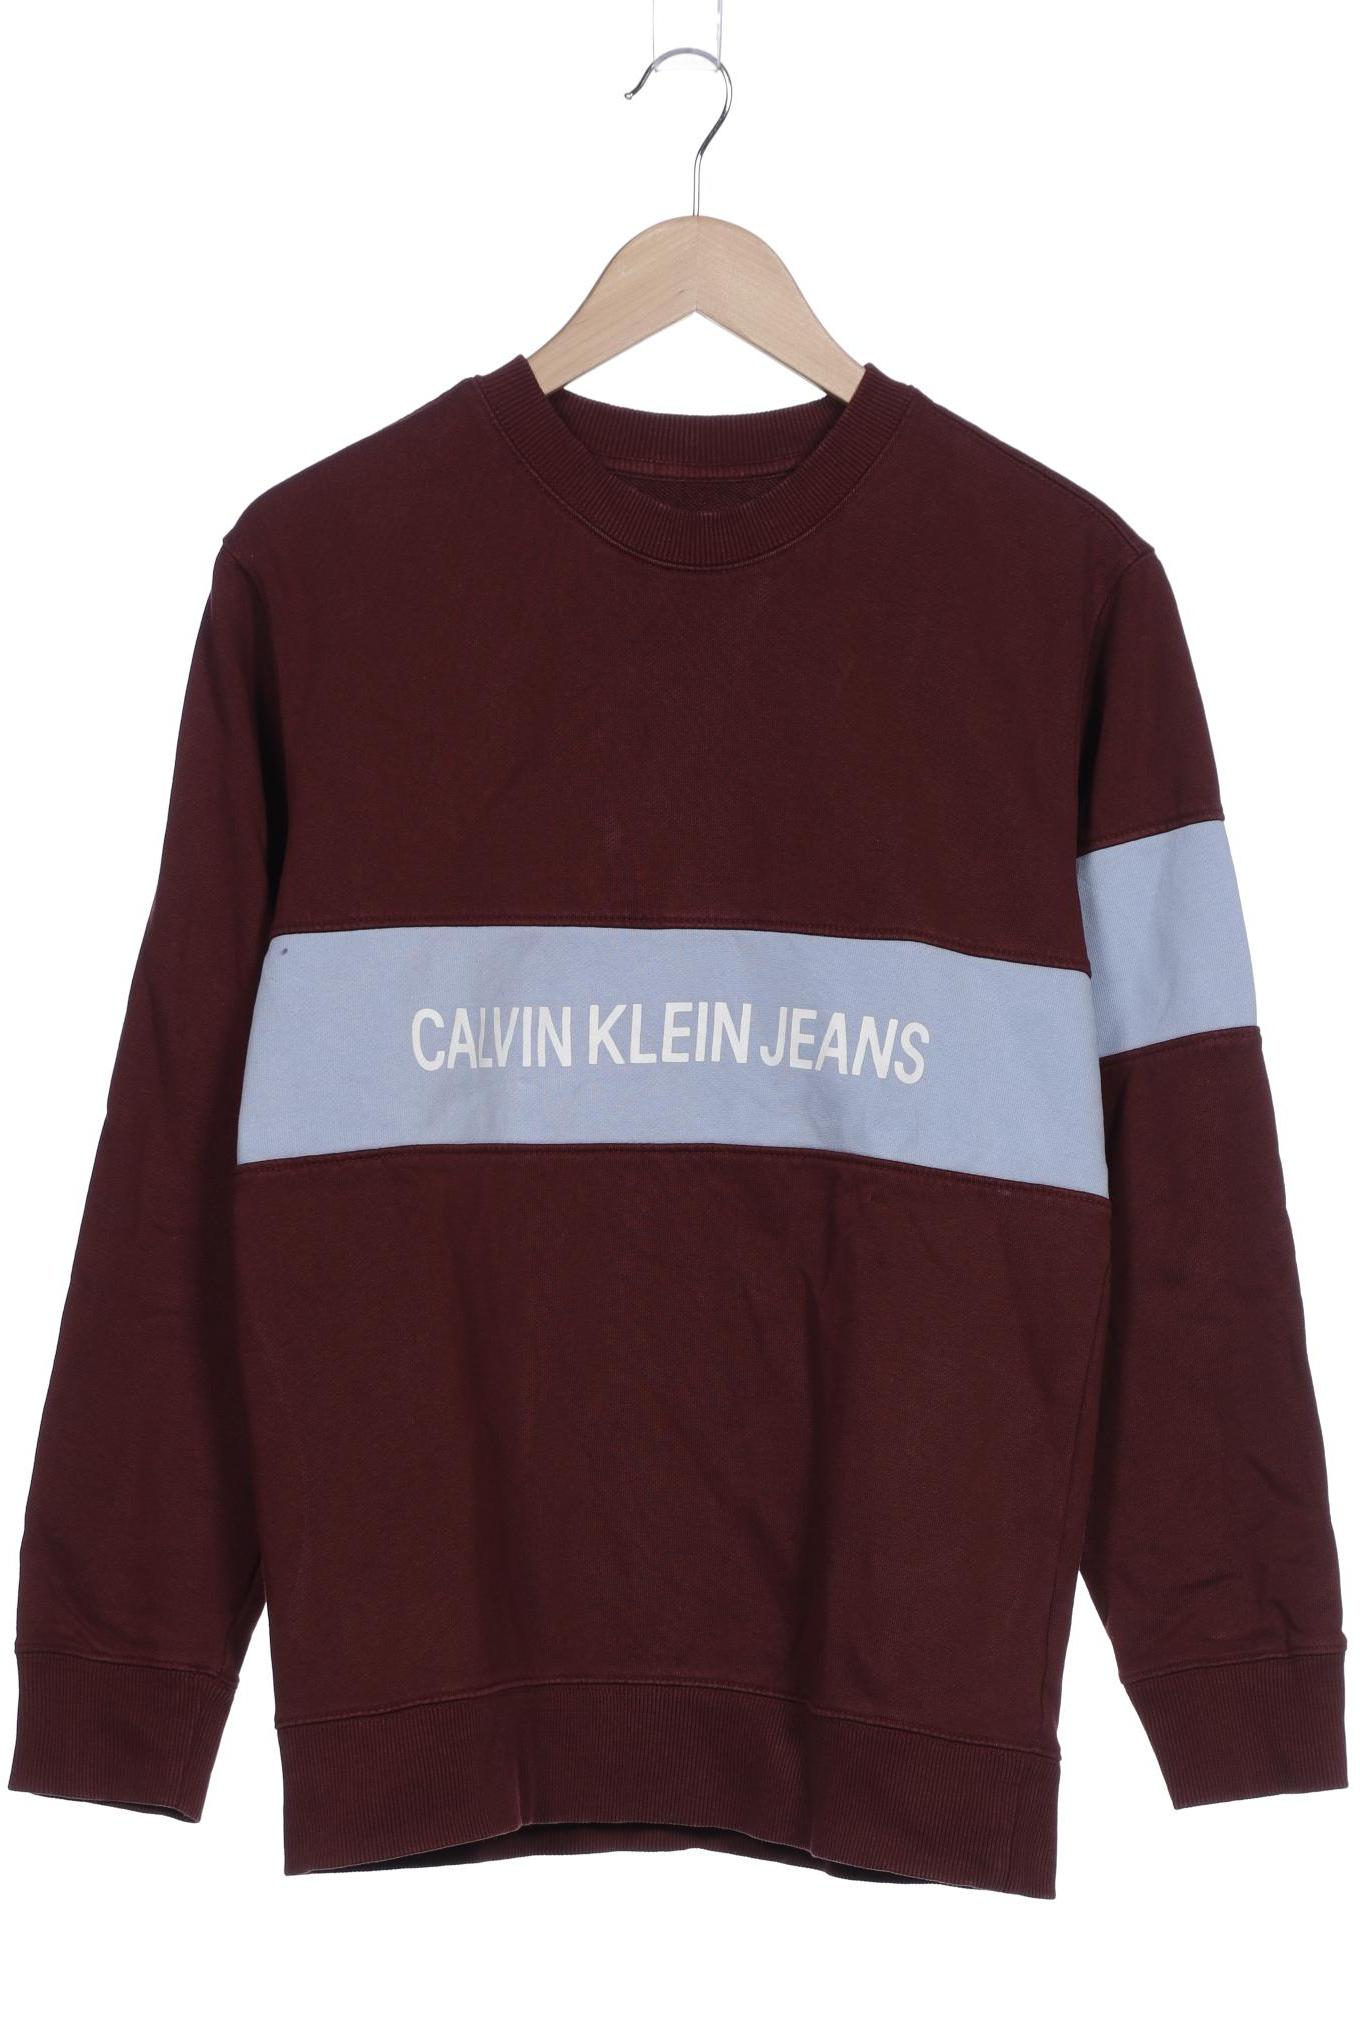 Calvin Klein Jeans Herren Sweatshirt, bordeaux von Calvin Klein Jeans